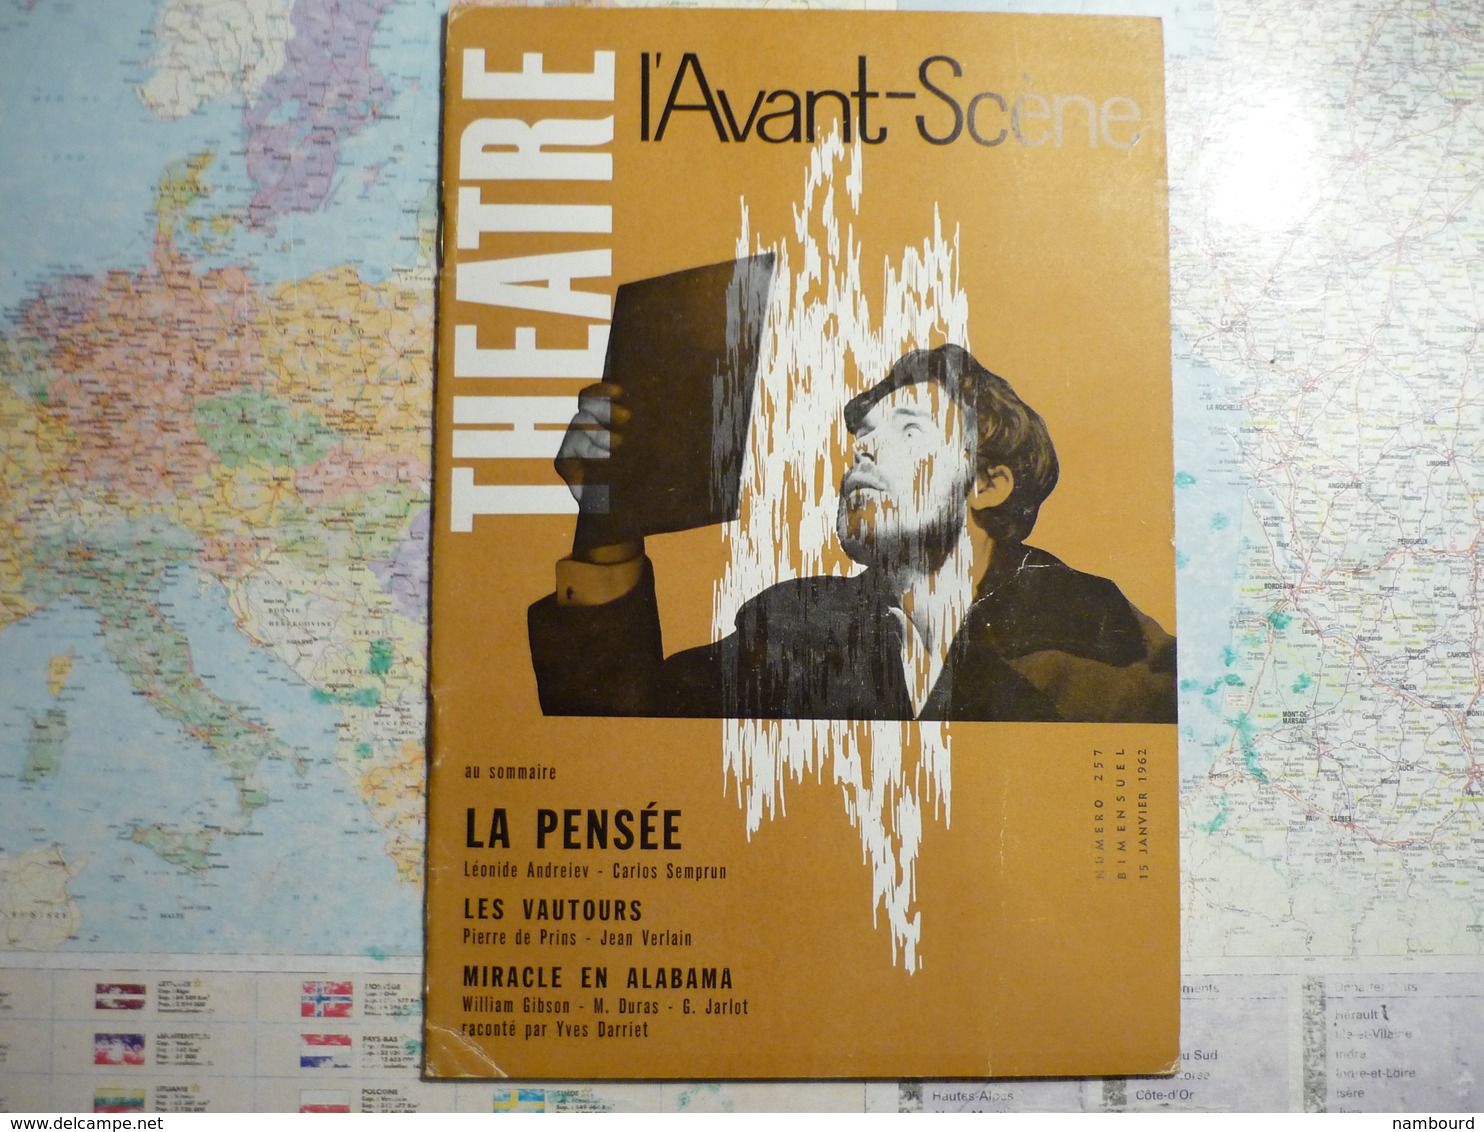 L'Avant-Scène femina-Théâtre lot de 14 numéros consécurifs du N°255 (15 Décembre 1961) au N°268 (1-er Juillet 1962)